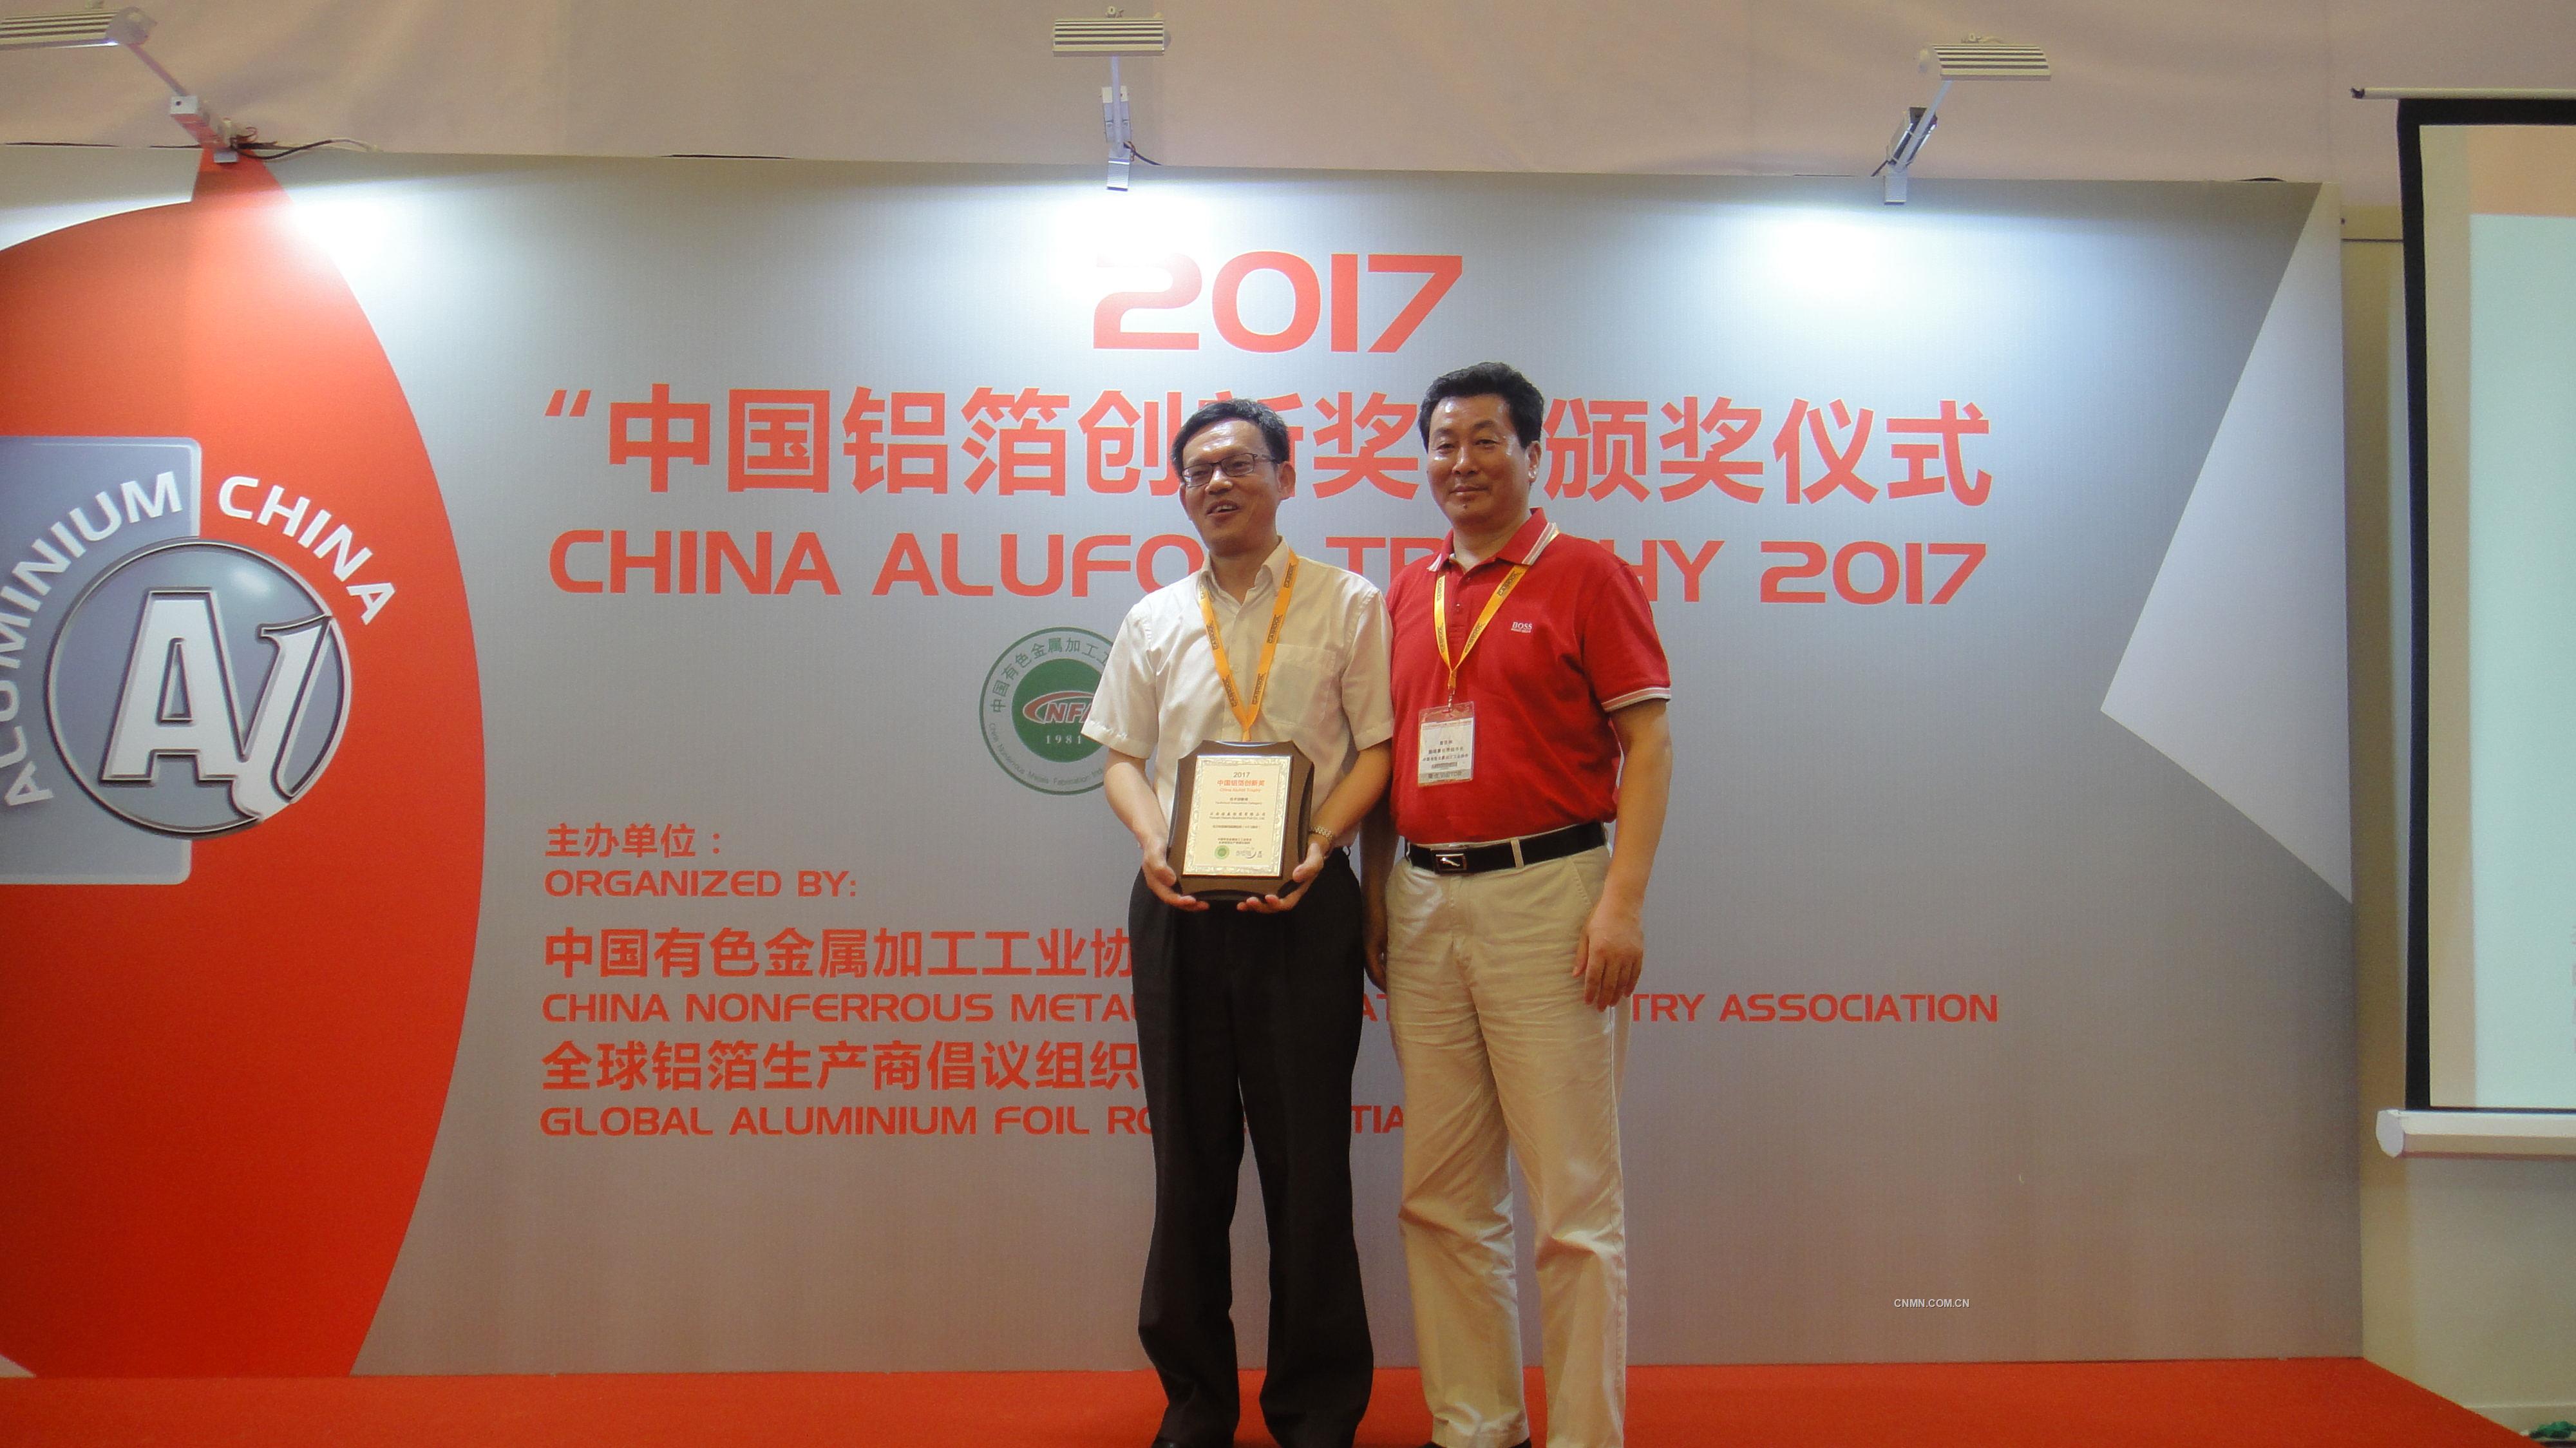 雲鋁浩鑫公司總經理馬寧接受“首屆中國鋁箔創新獎”頒獎